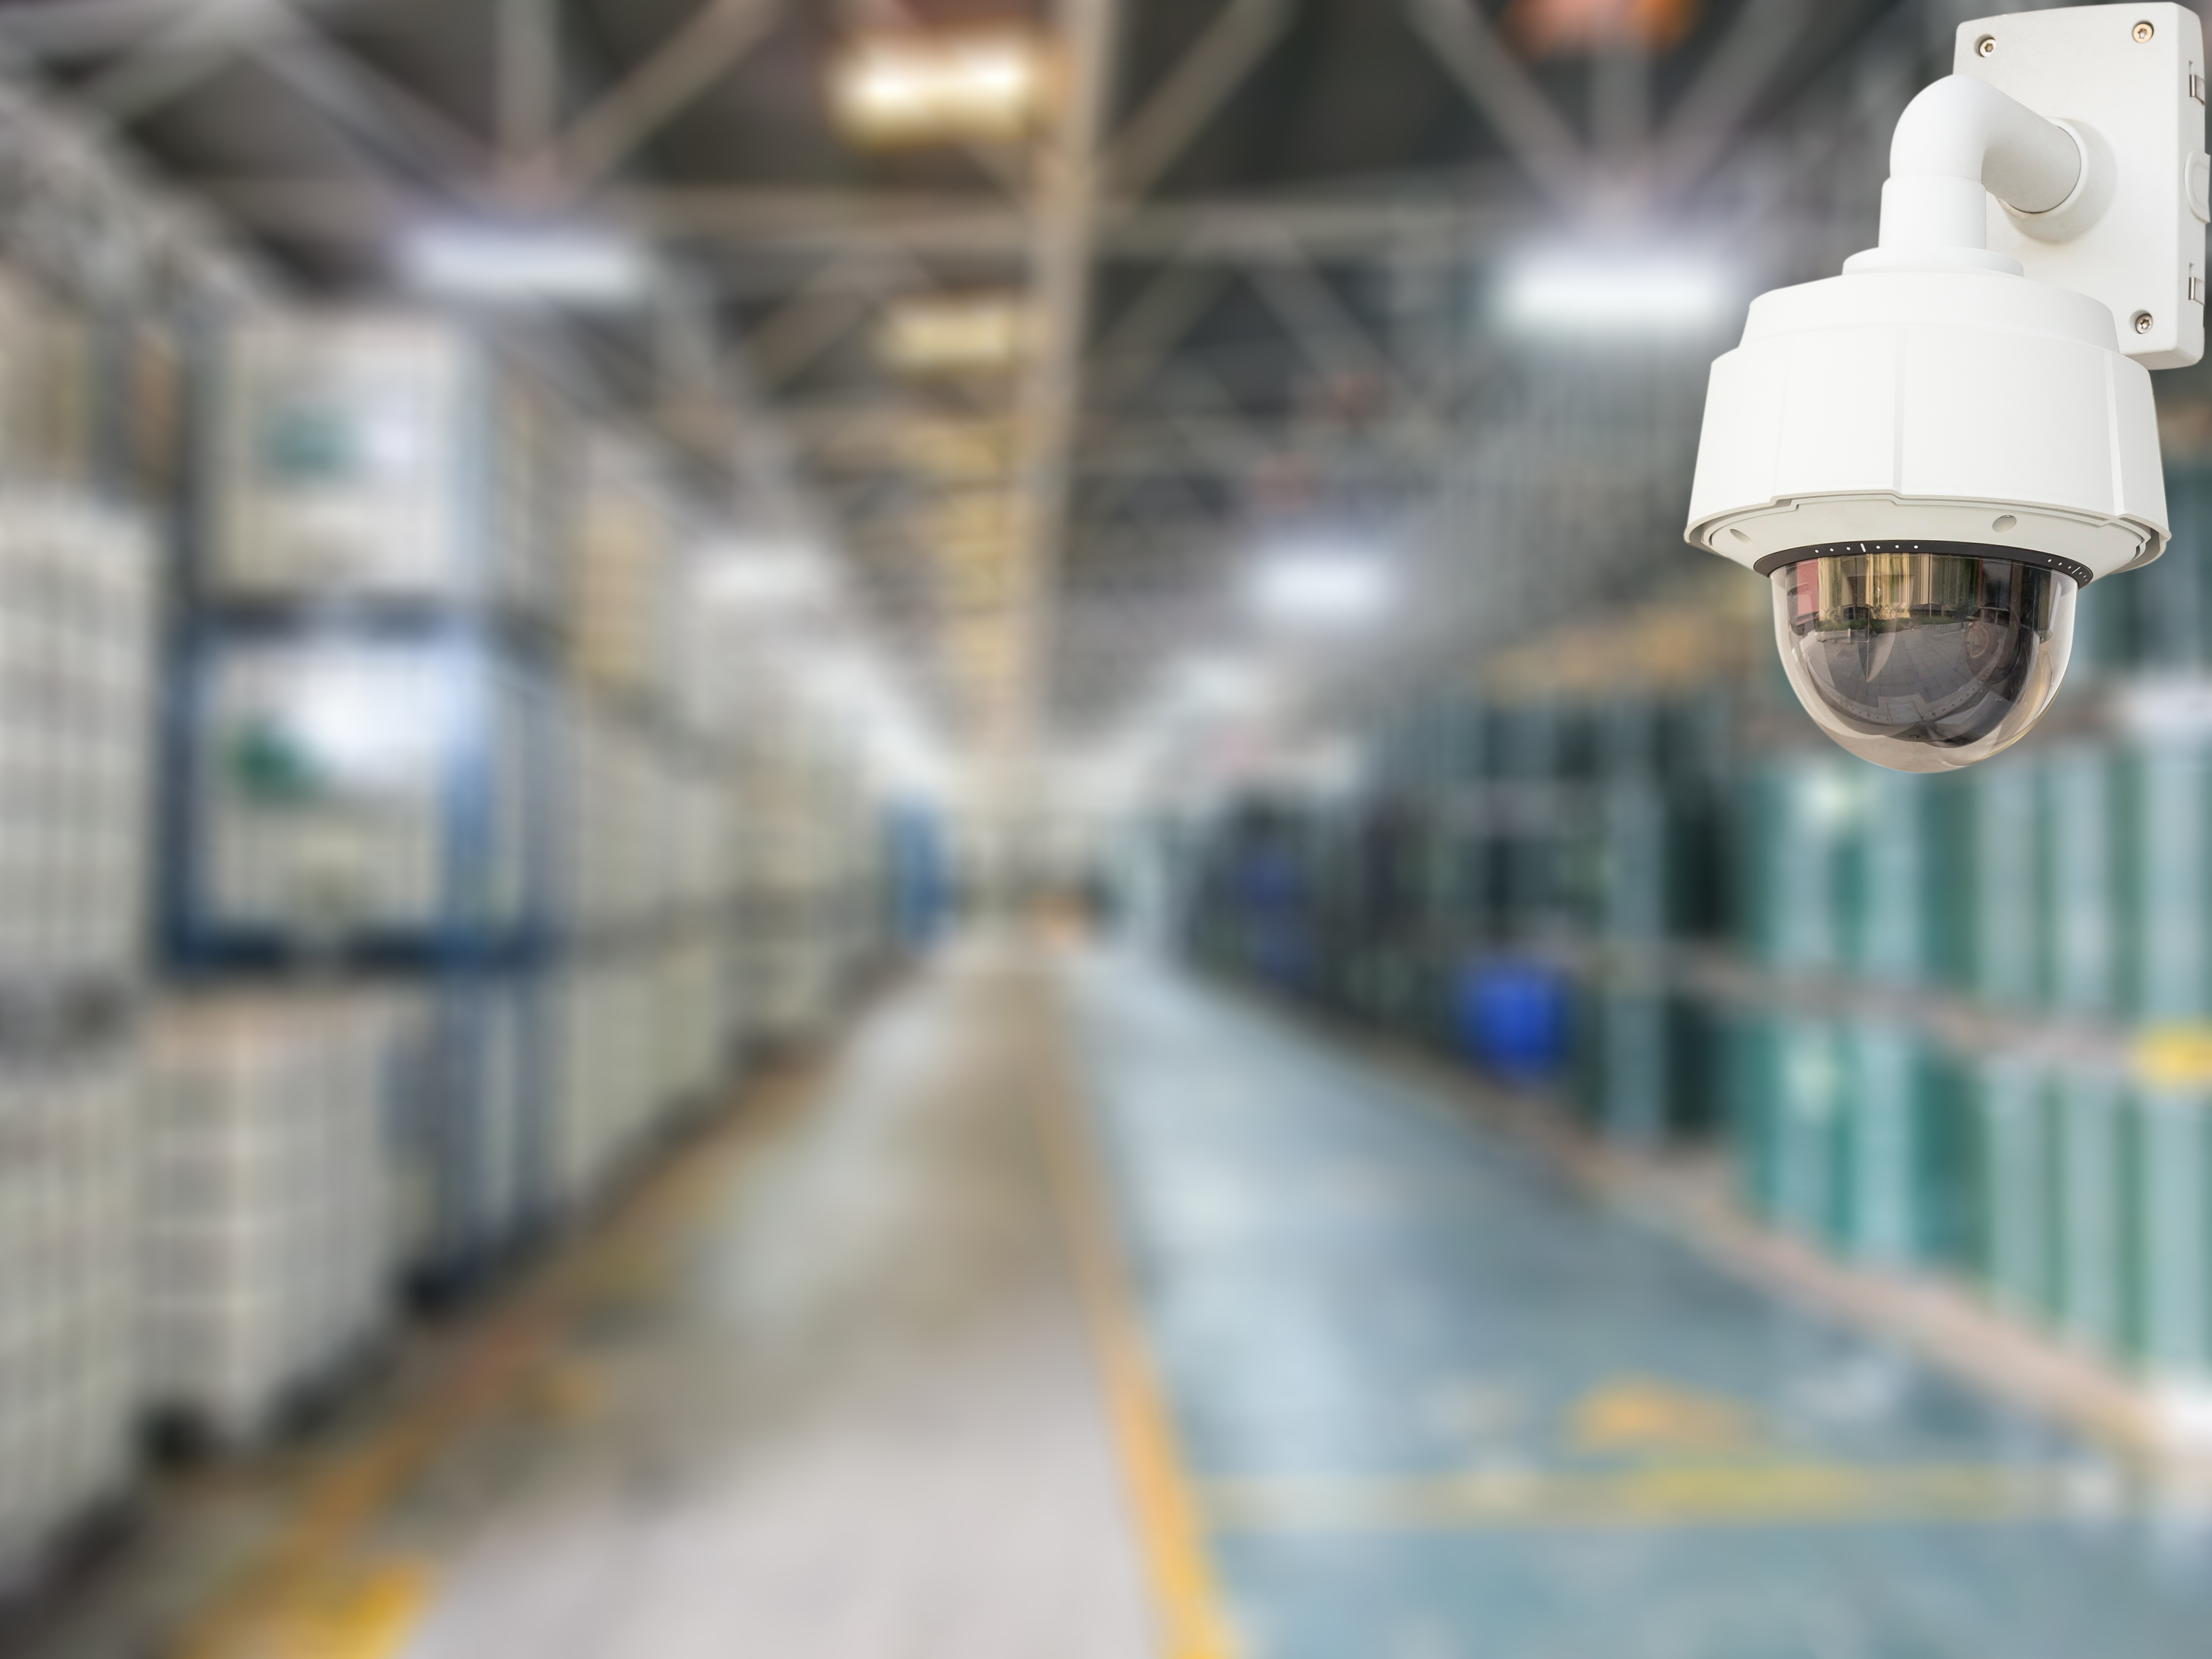 Tampa Video Surveillance Equipment Installation